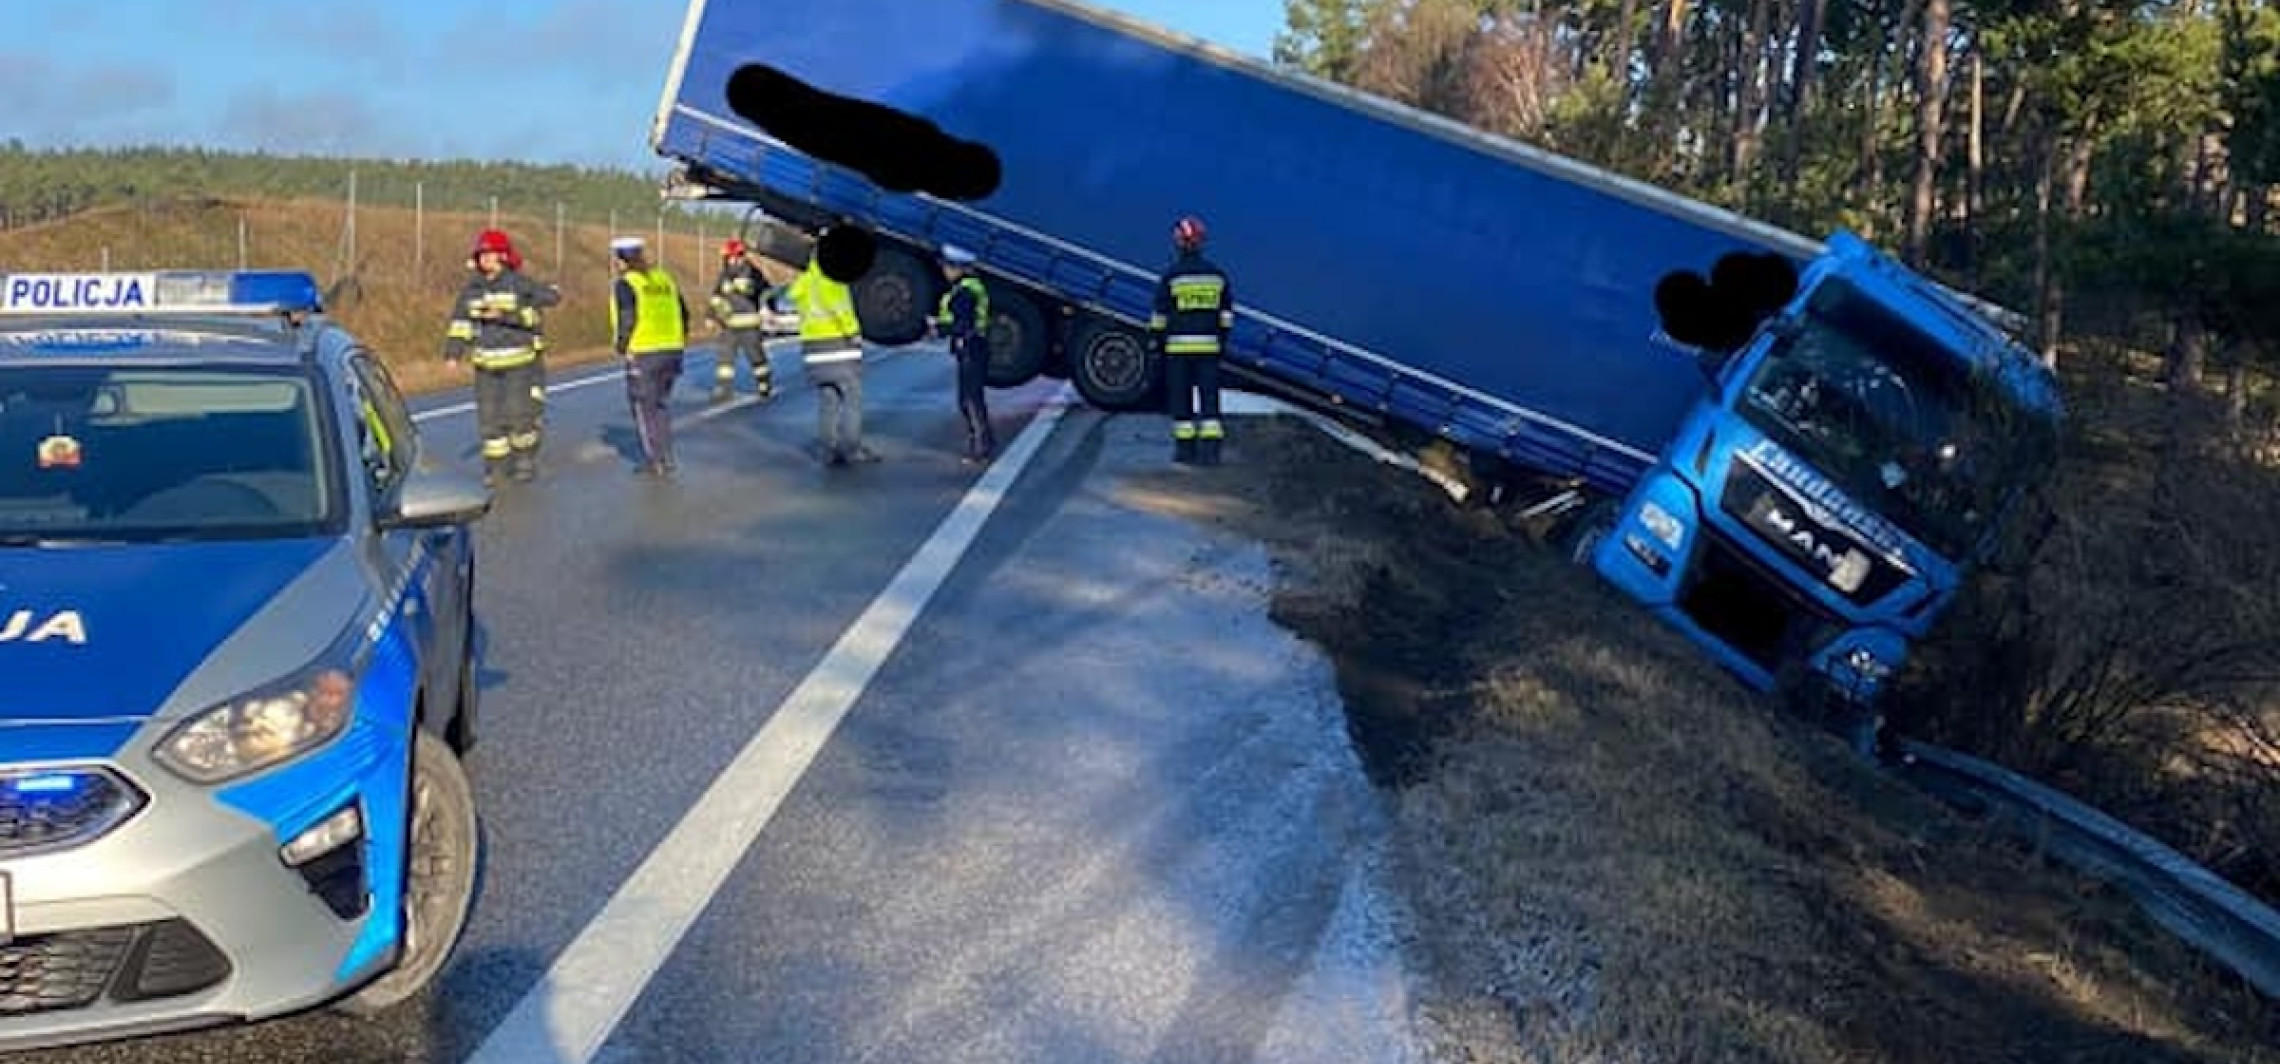 Region - Ciężarówka zablokowała drogę w Brzozie koło Torunia